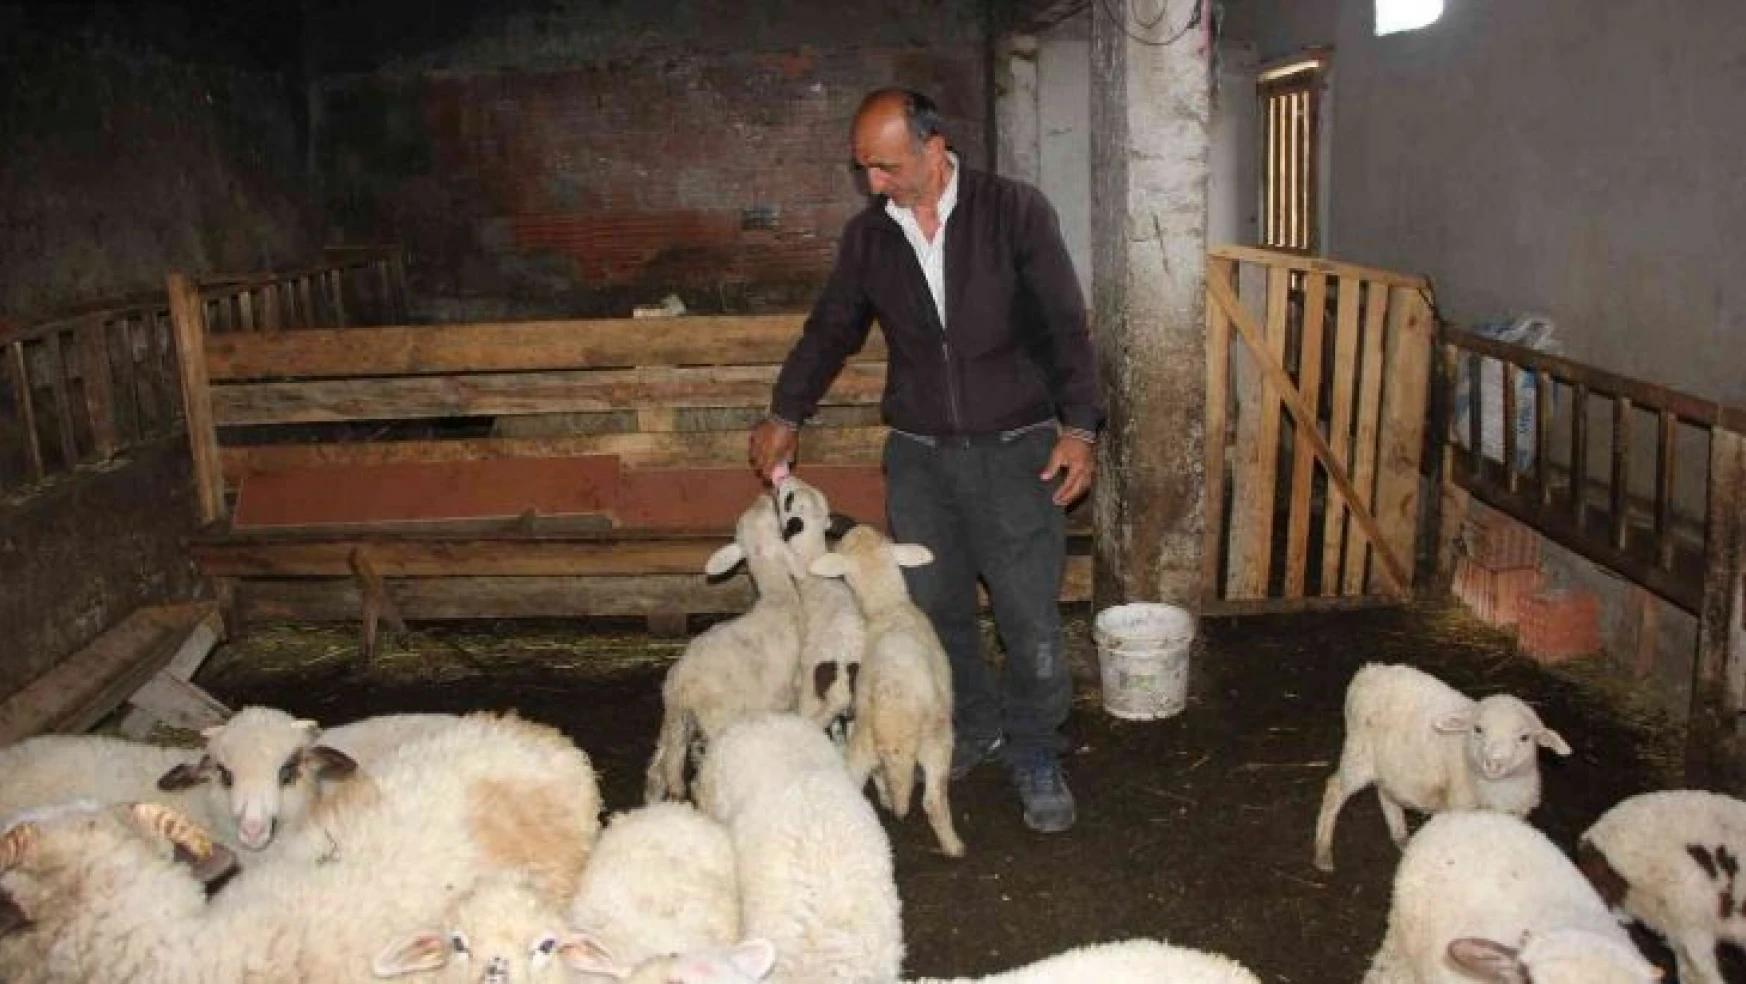 İnternetten satmak istediği koyunlarını dolandırıcılara kaptırdı